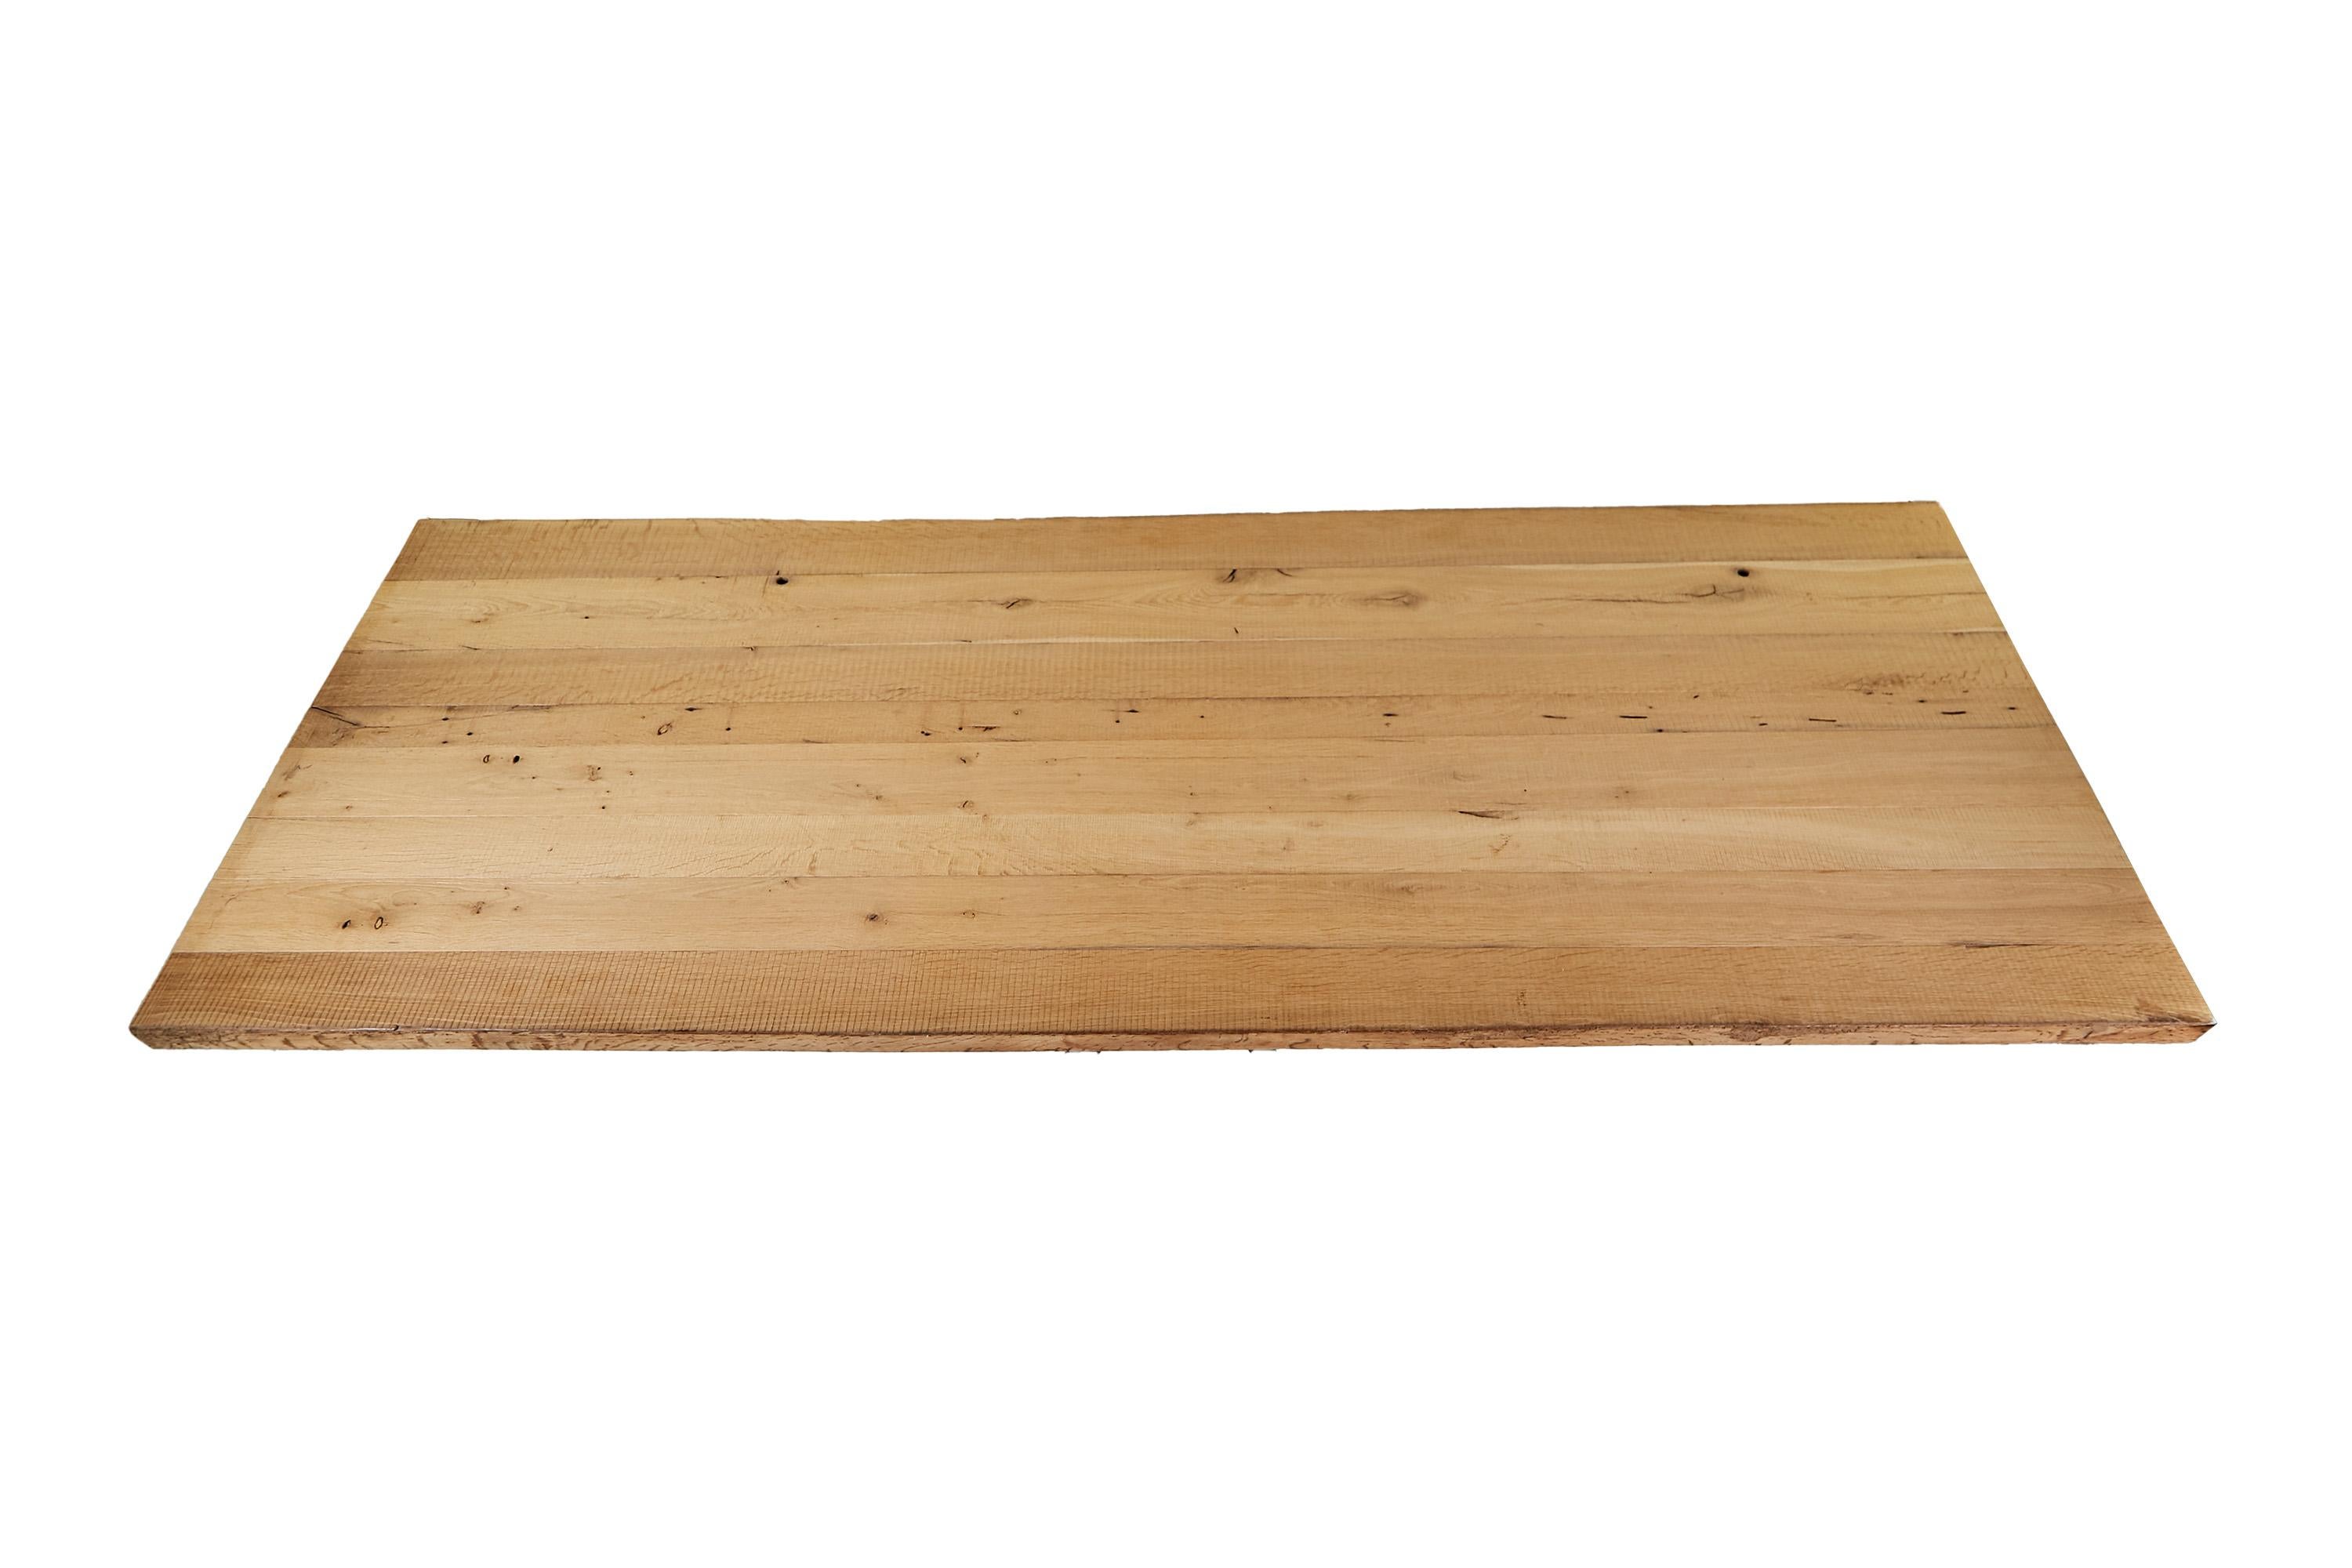 Très beau plateau de table en chêne. La surface est brossée grossièrement. Le matériau a été recyclé à partir d'une ancienne poutre, ce qui confère au bois son caractère ancien.

Le plateau de table est livré sans cadre. Elle peut être commandée